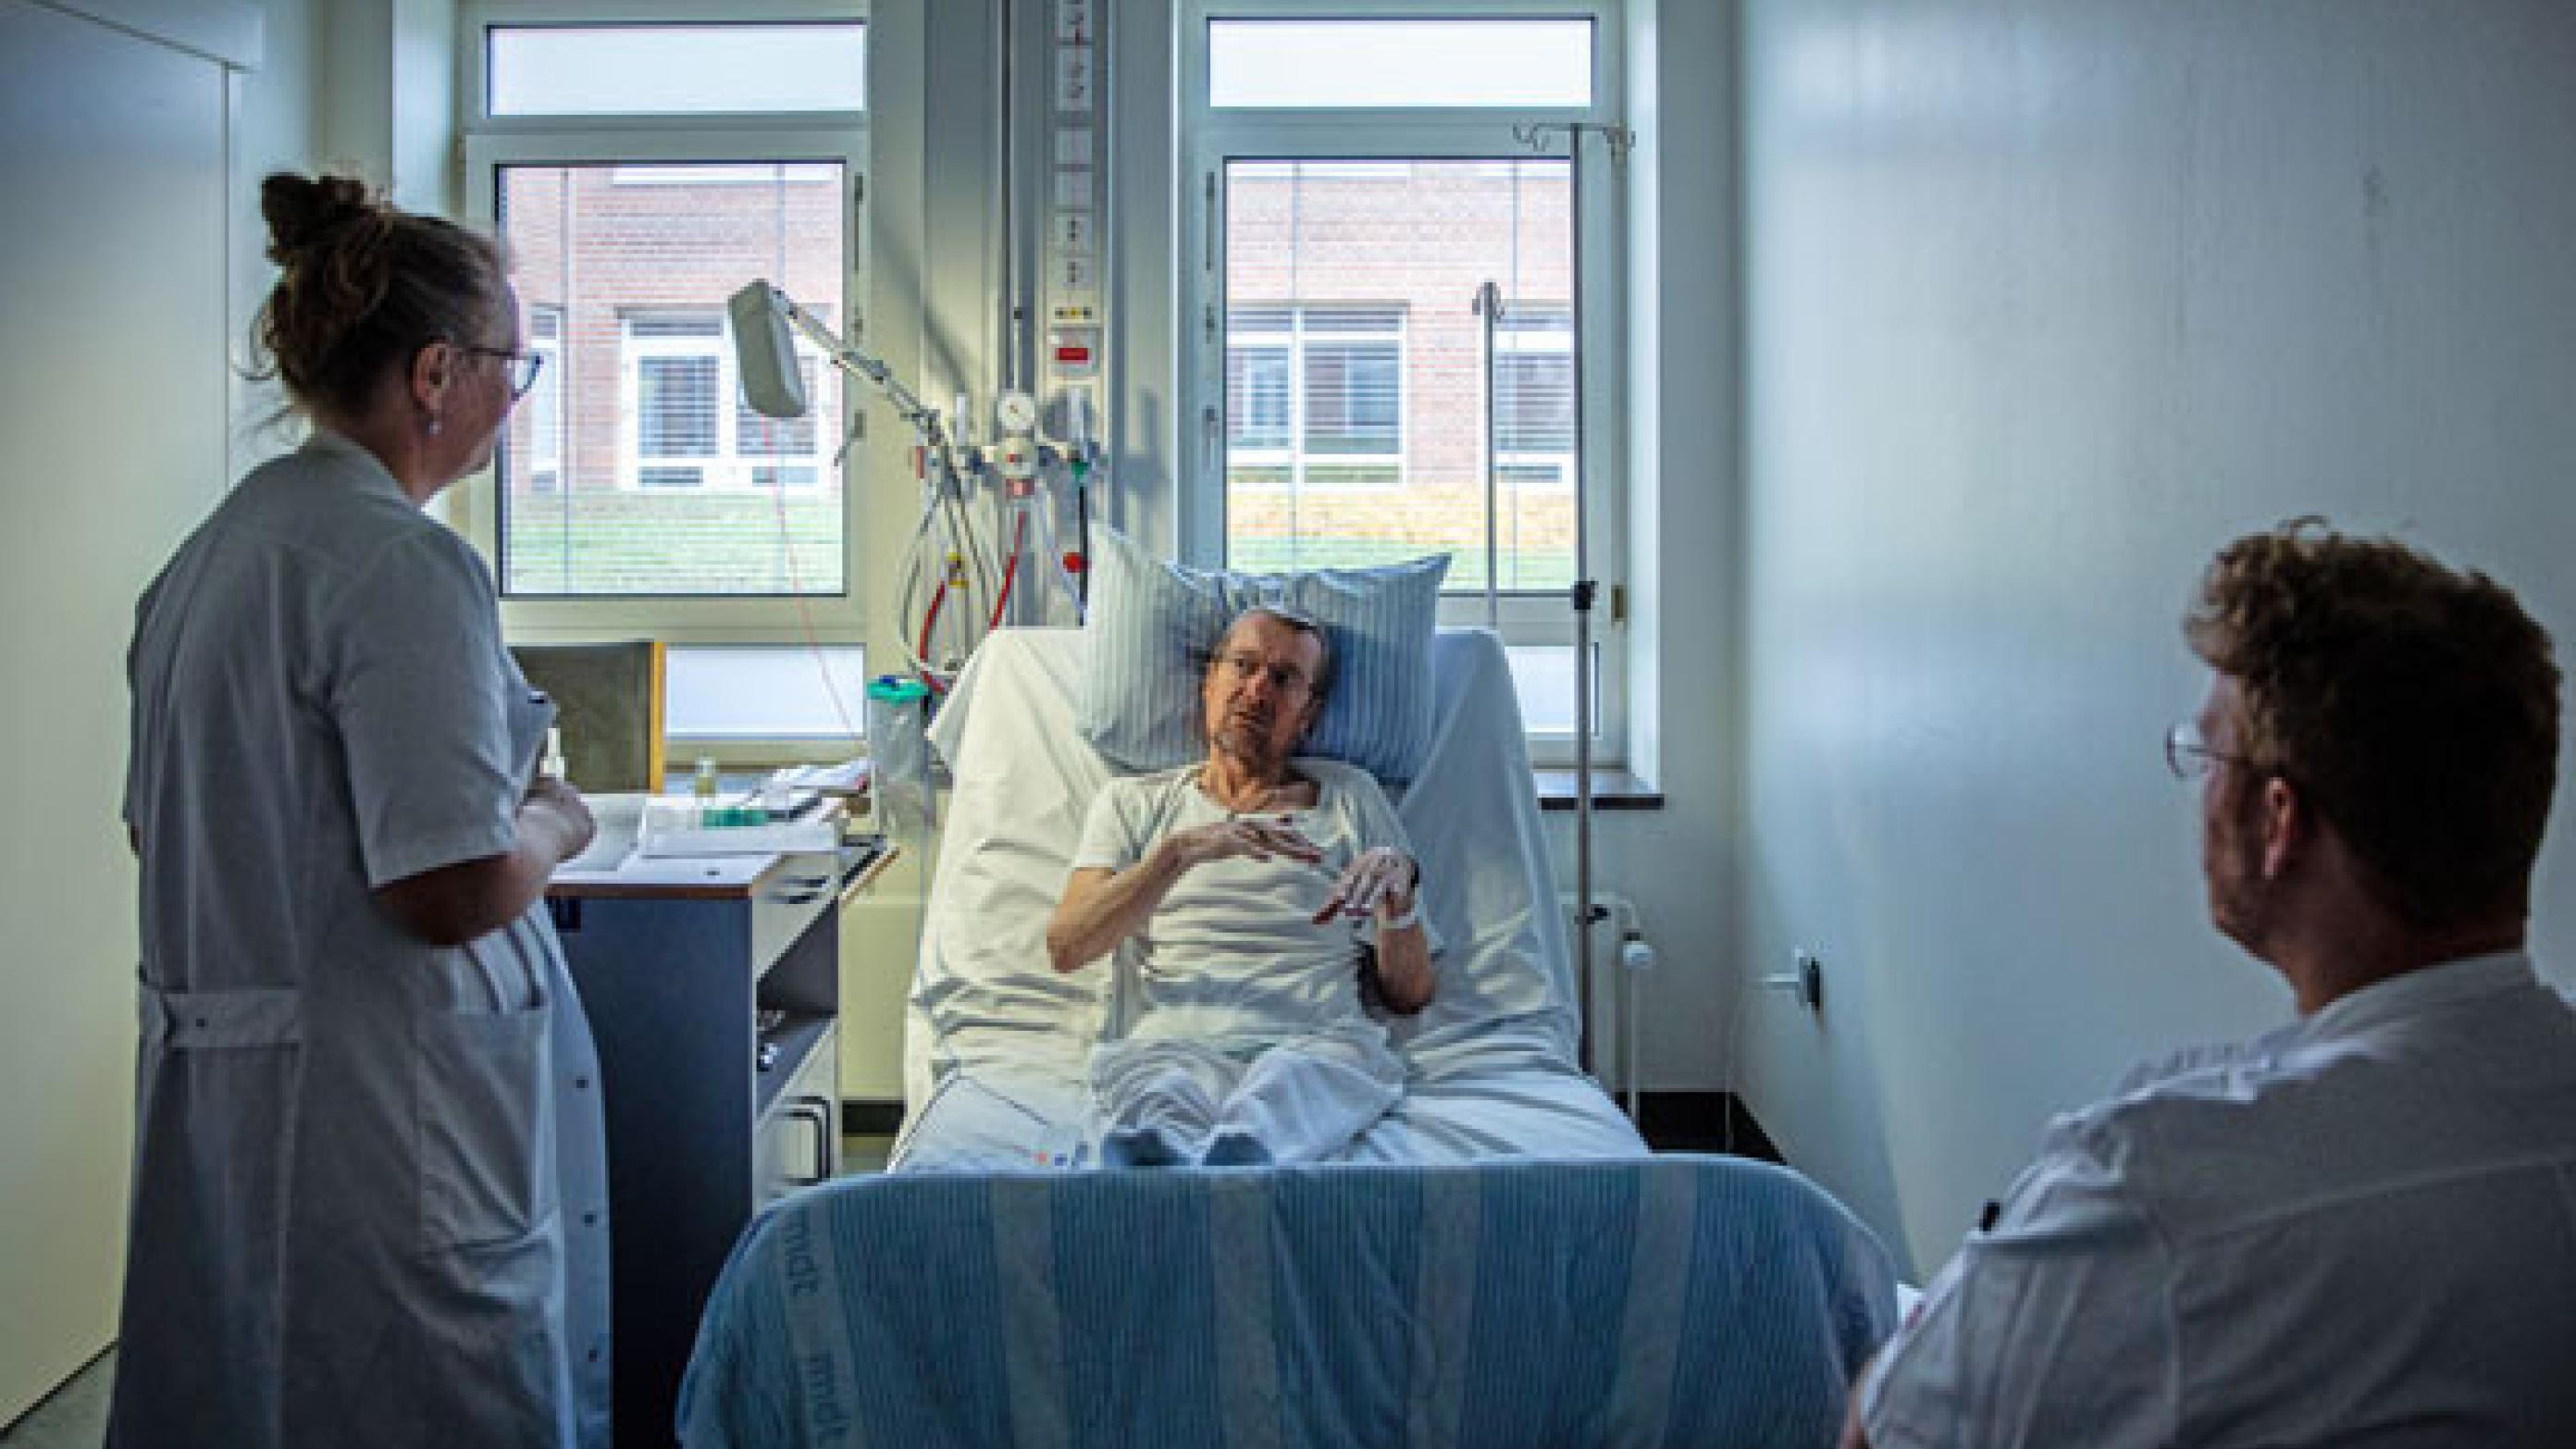 Lungemediciner Gitte Anna Madsen, AUH, ser til en patient sammen med sin kollega Jeppe Holm Atkins. Foto: Jesper Balleby